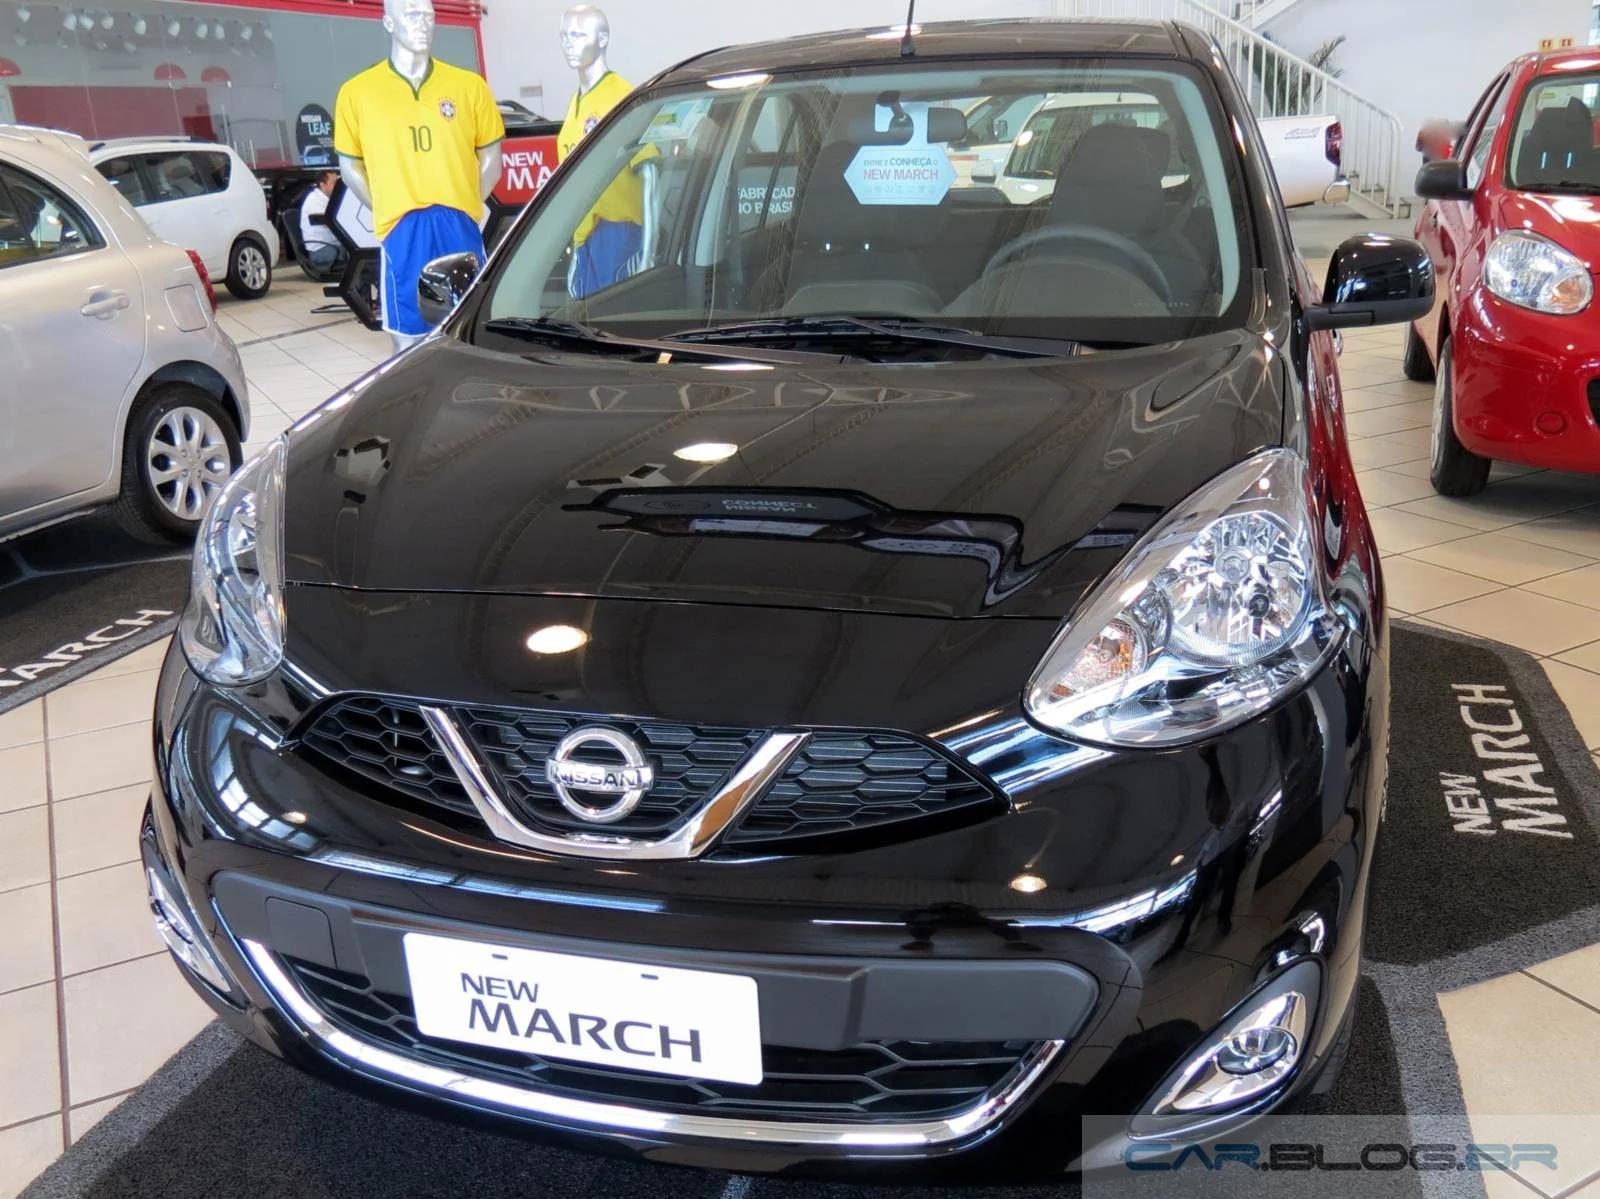 Novo Nissan March 2015 - preto